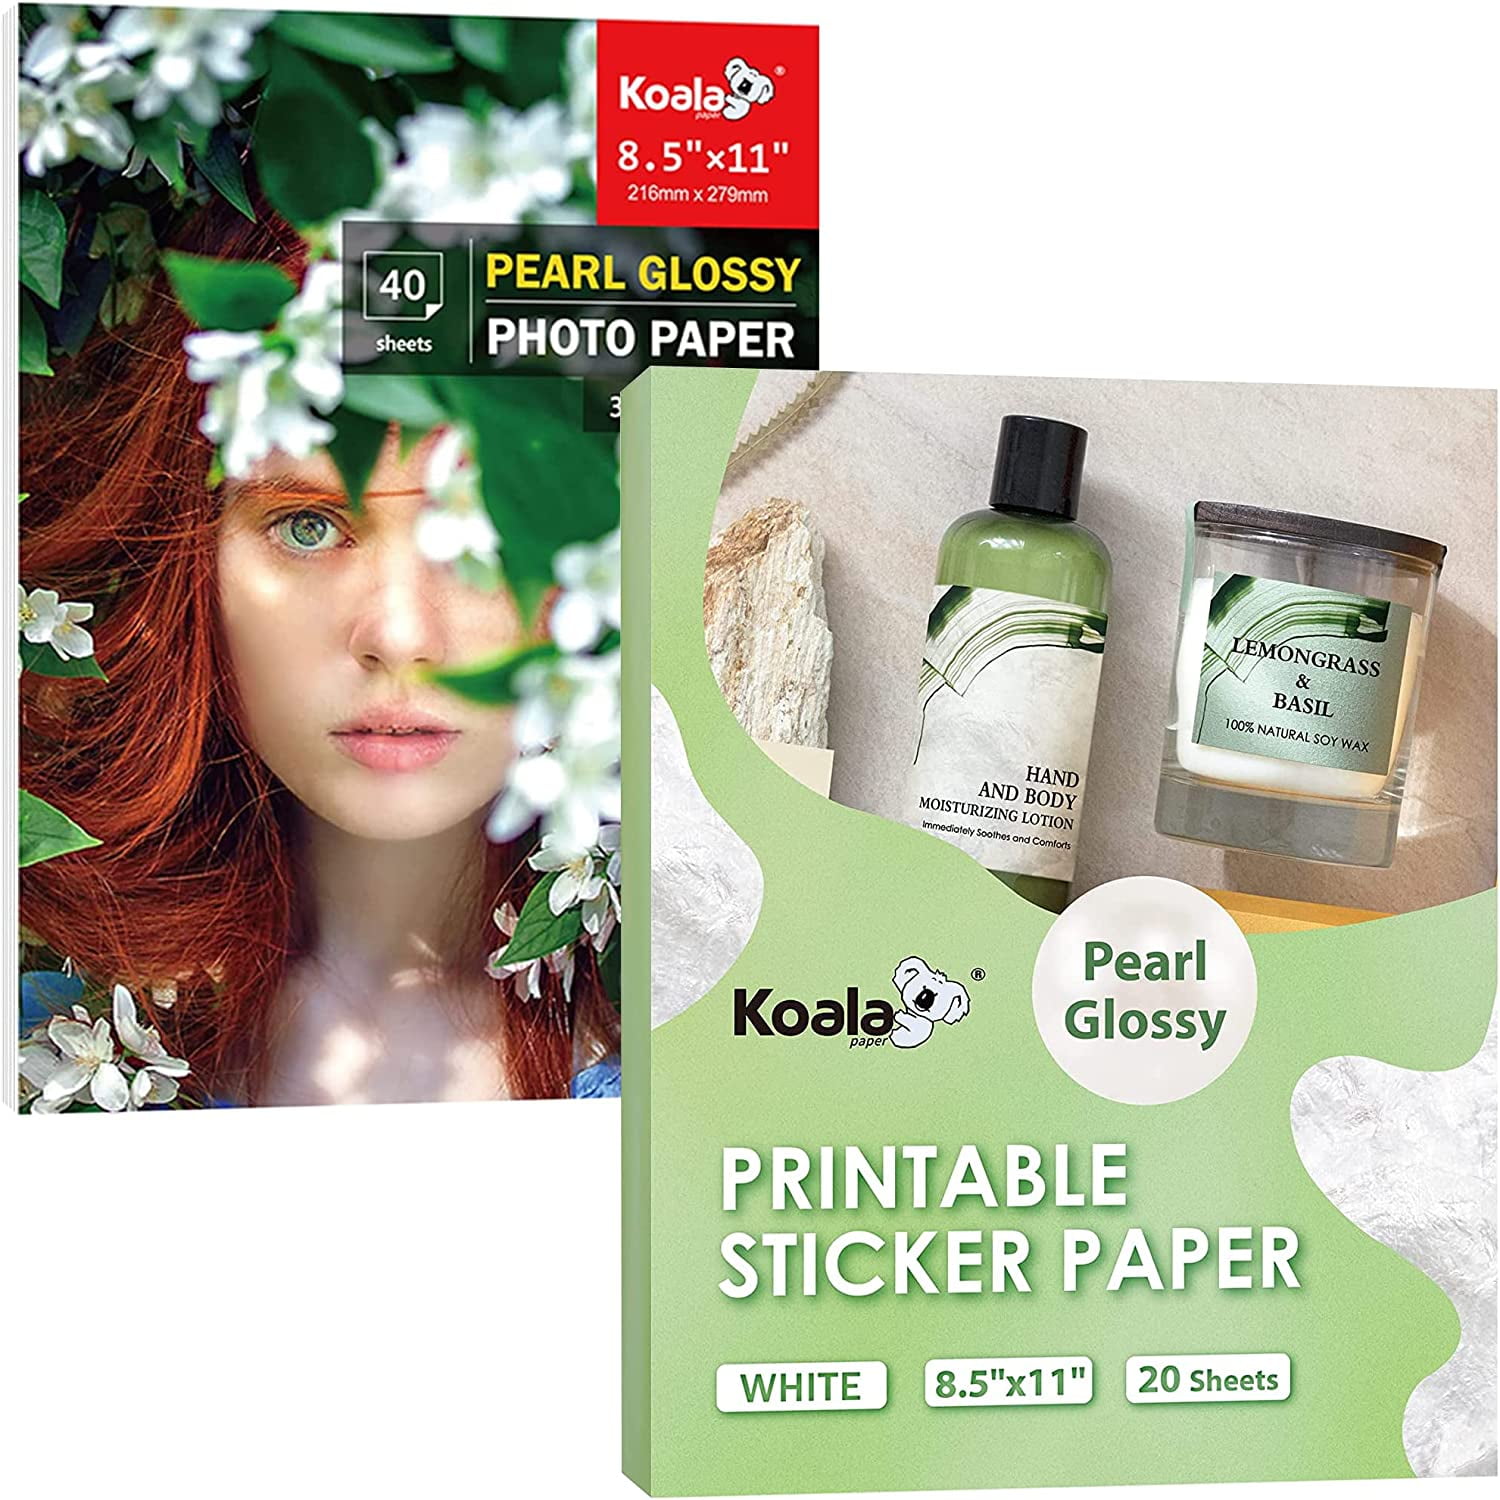 Koala Printable Pearl Glossy Sticker Paper for Inkjet and Laser